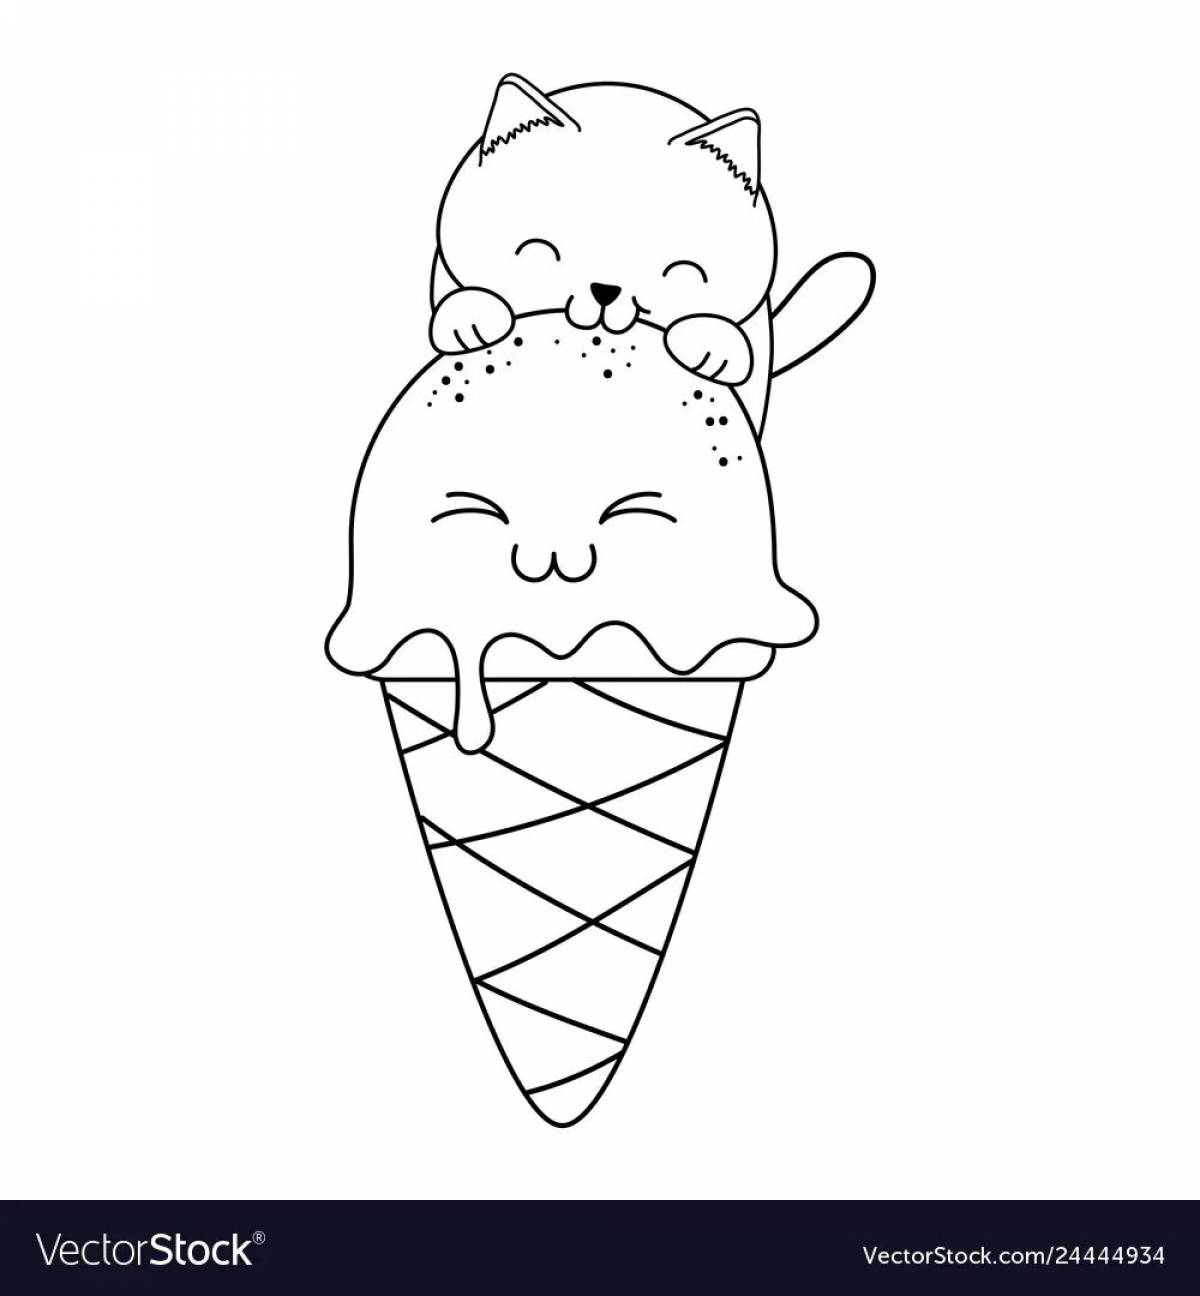 Cat ice cream #11